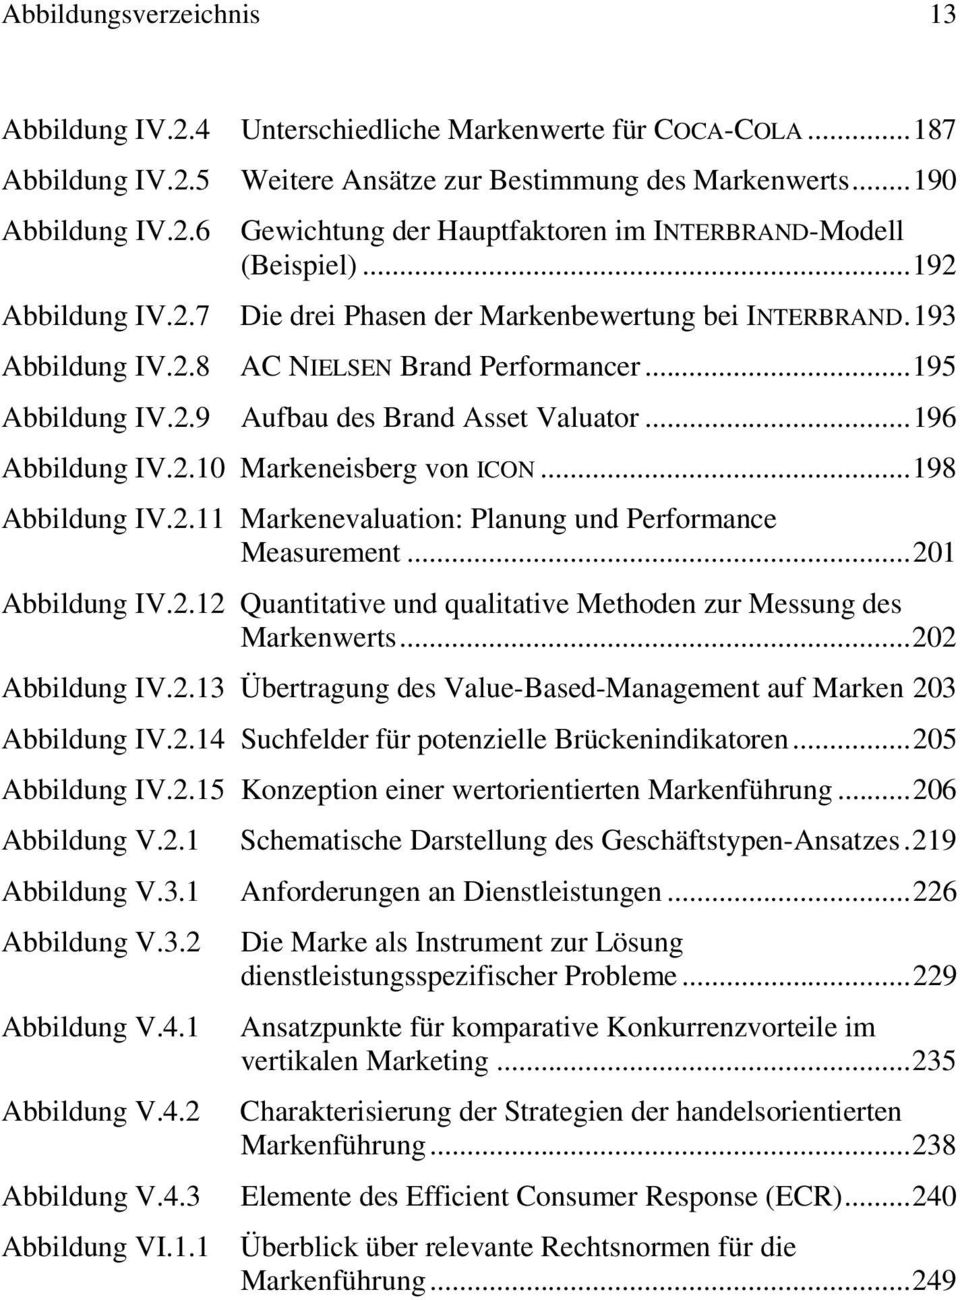 ..196 Abbildung IV.2.10 Markeneisberg von ICON...198 Abbildung IV.2.11 Markenevaluation: Planung und Performance Measurement...201 Abbildung IV.2.12 Quantitative und qualitative Methoden zur Messung des Markenwerts.